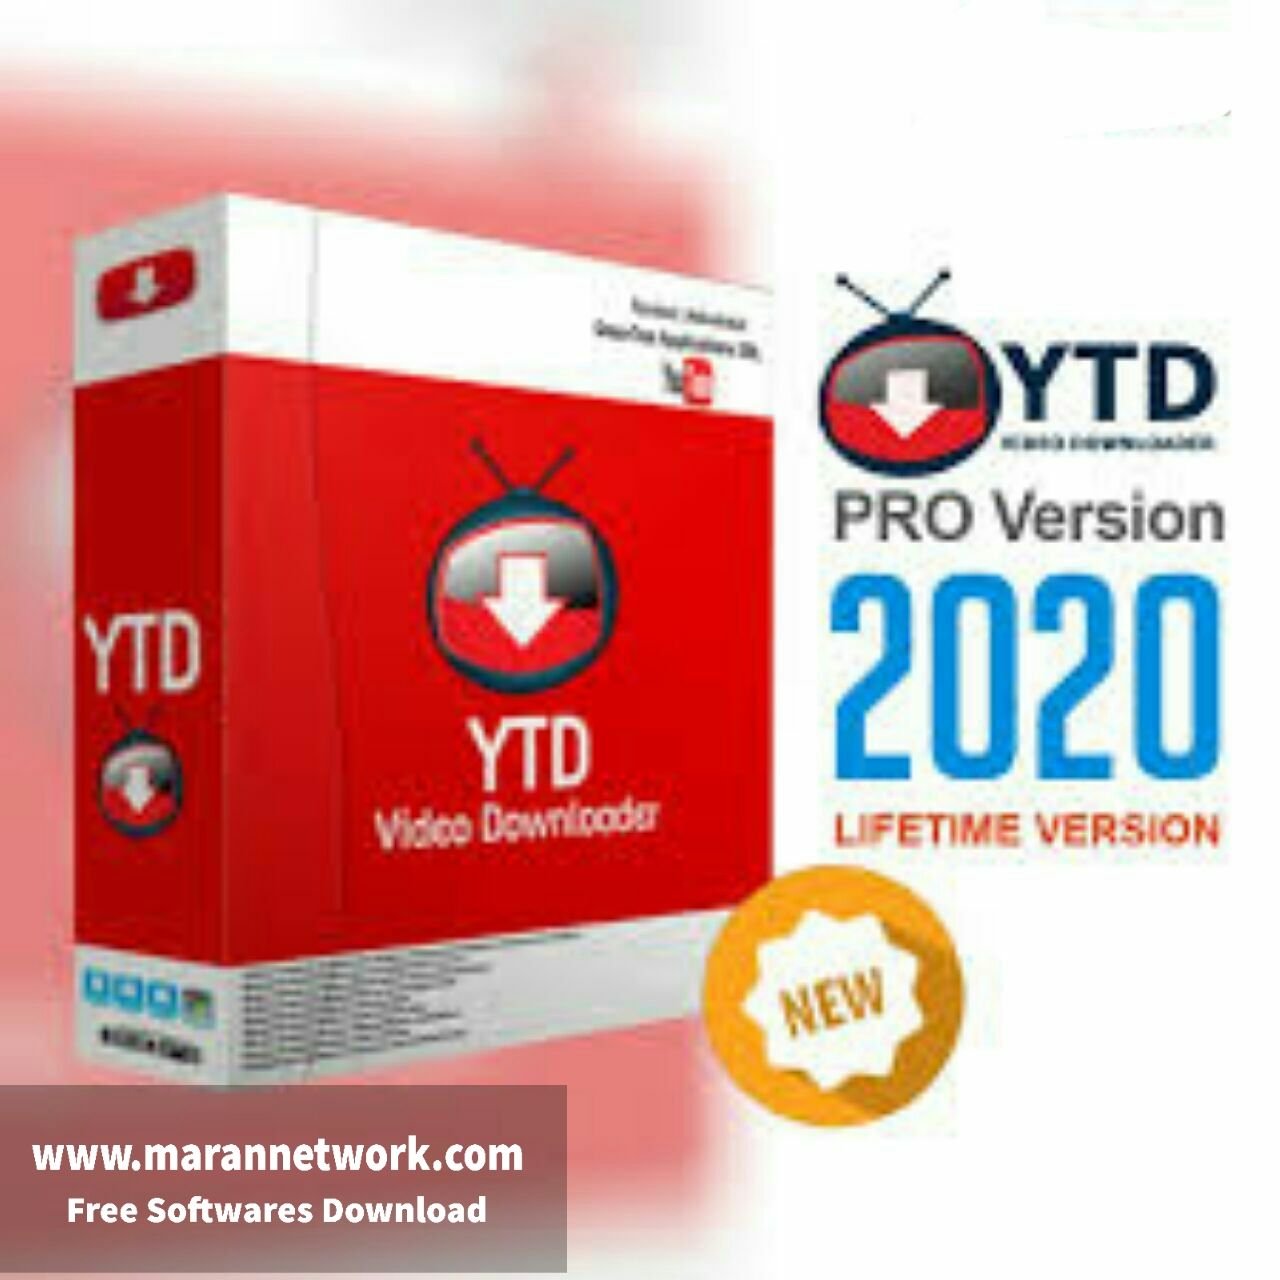 YTD Video Downloader Pro 7.6.3.3 for windows download